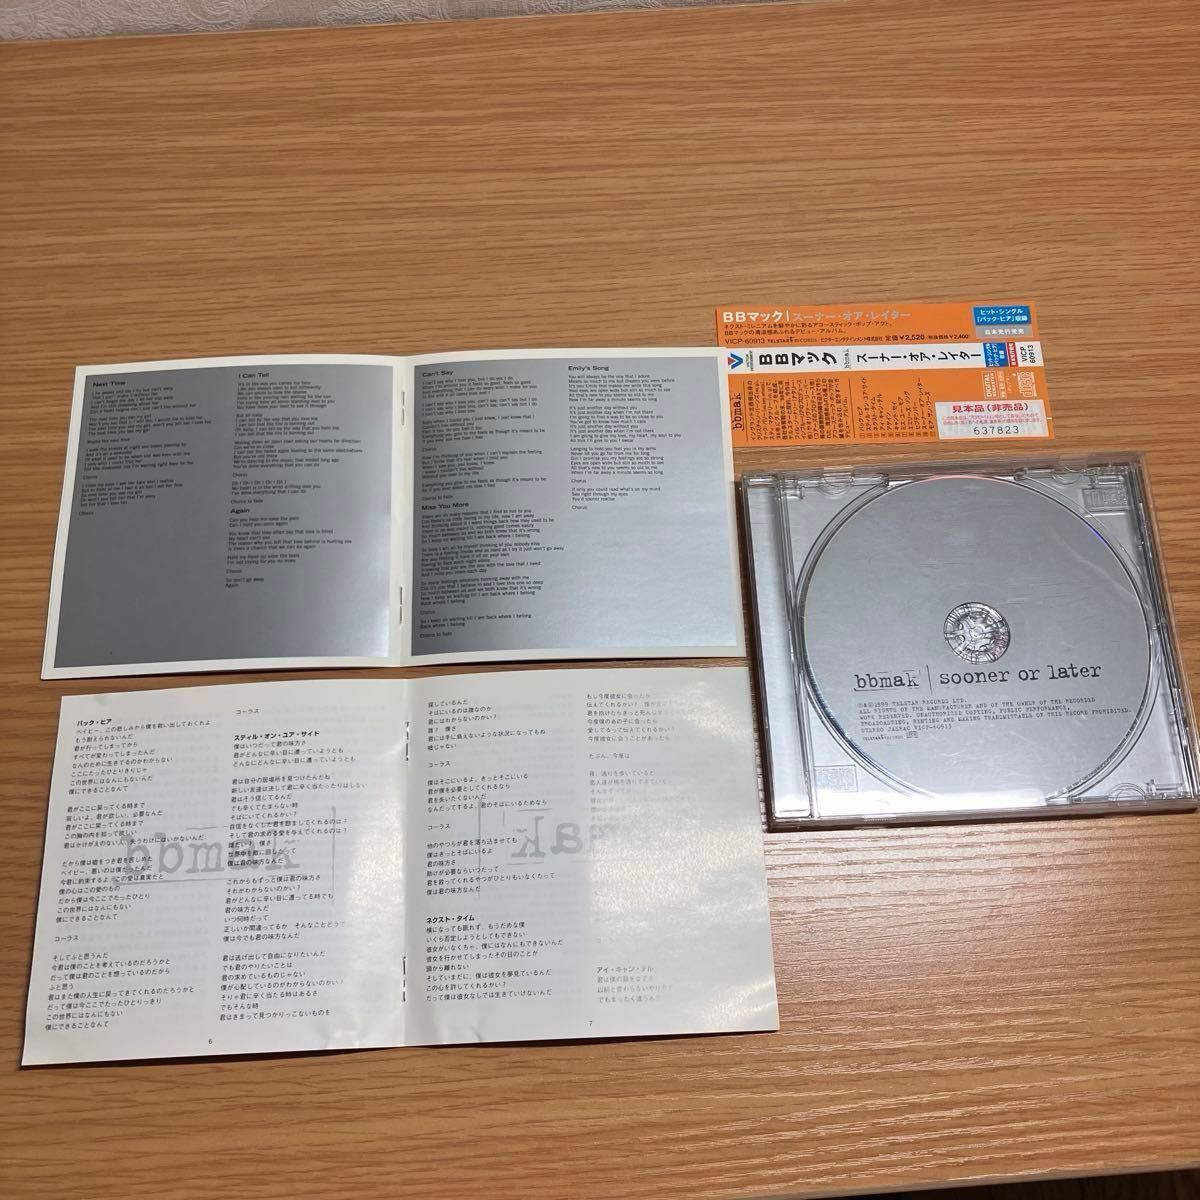 BBマック / スーナー・オア・レイター 音楽CD 洋楽ポップス サンプル盤